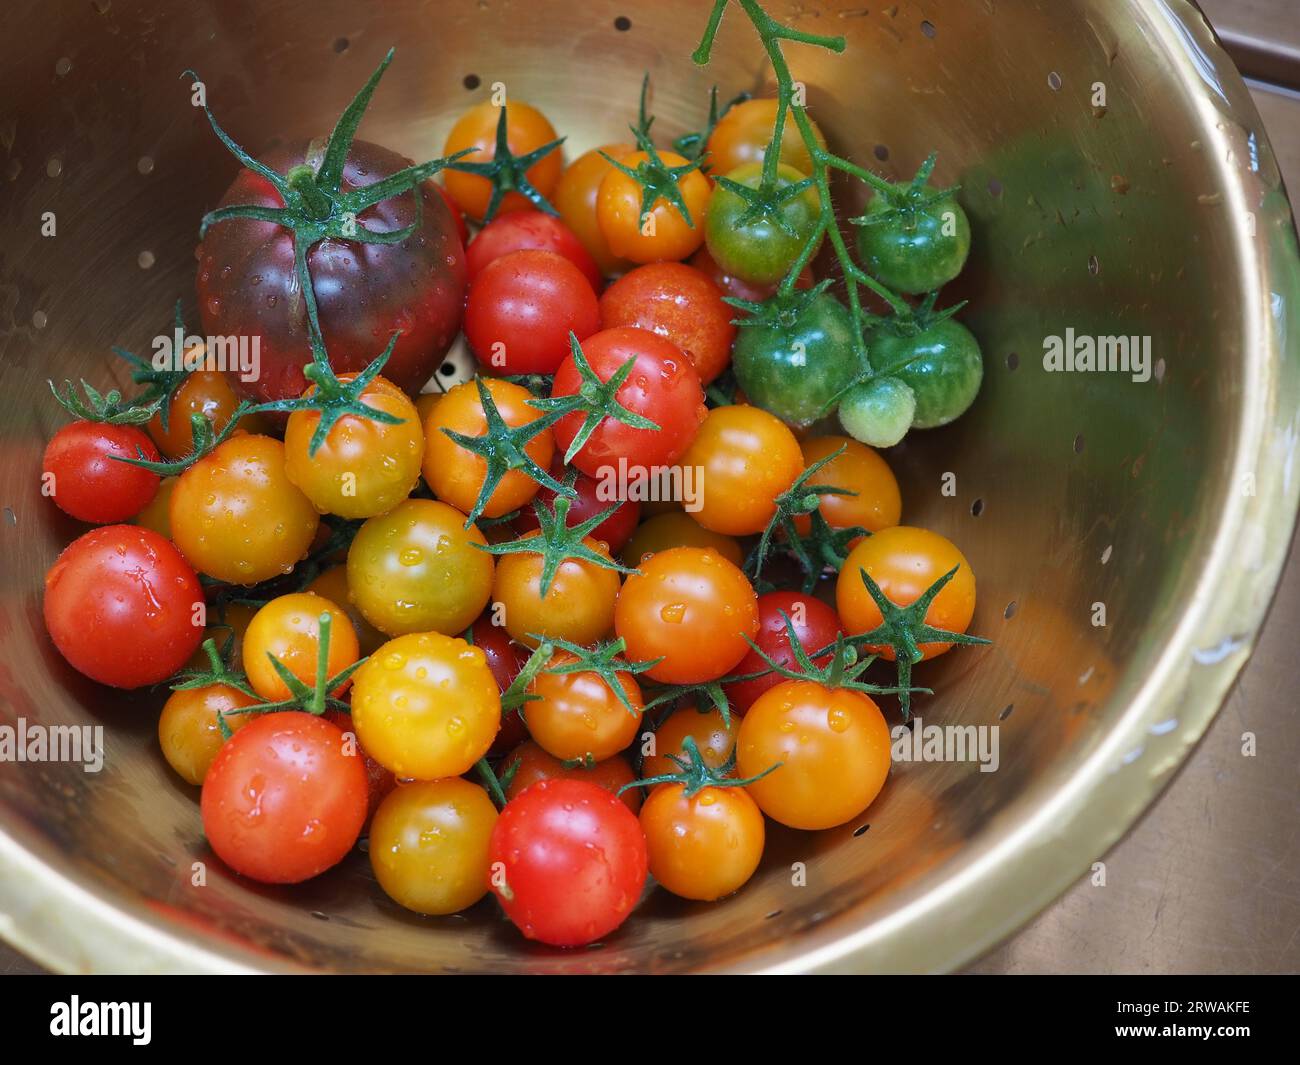 Un colorato mix di pomodori appena raccolti dal giardino in un colino d'oro che mostra le varietà Gardener's Delight, Sungold e Black Russian Foto Stock